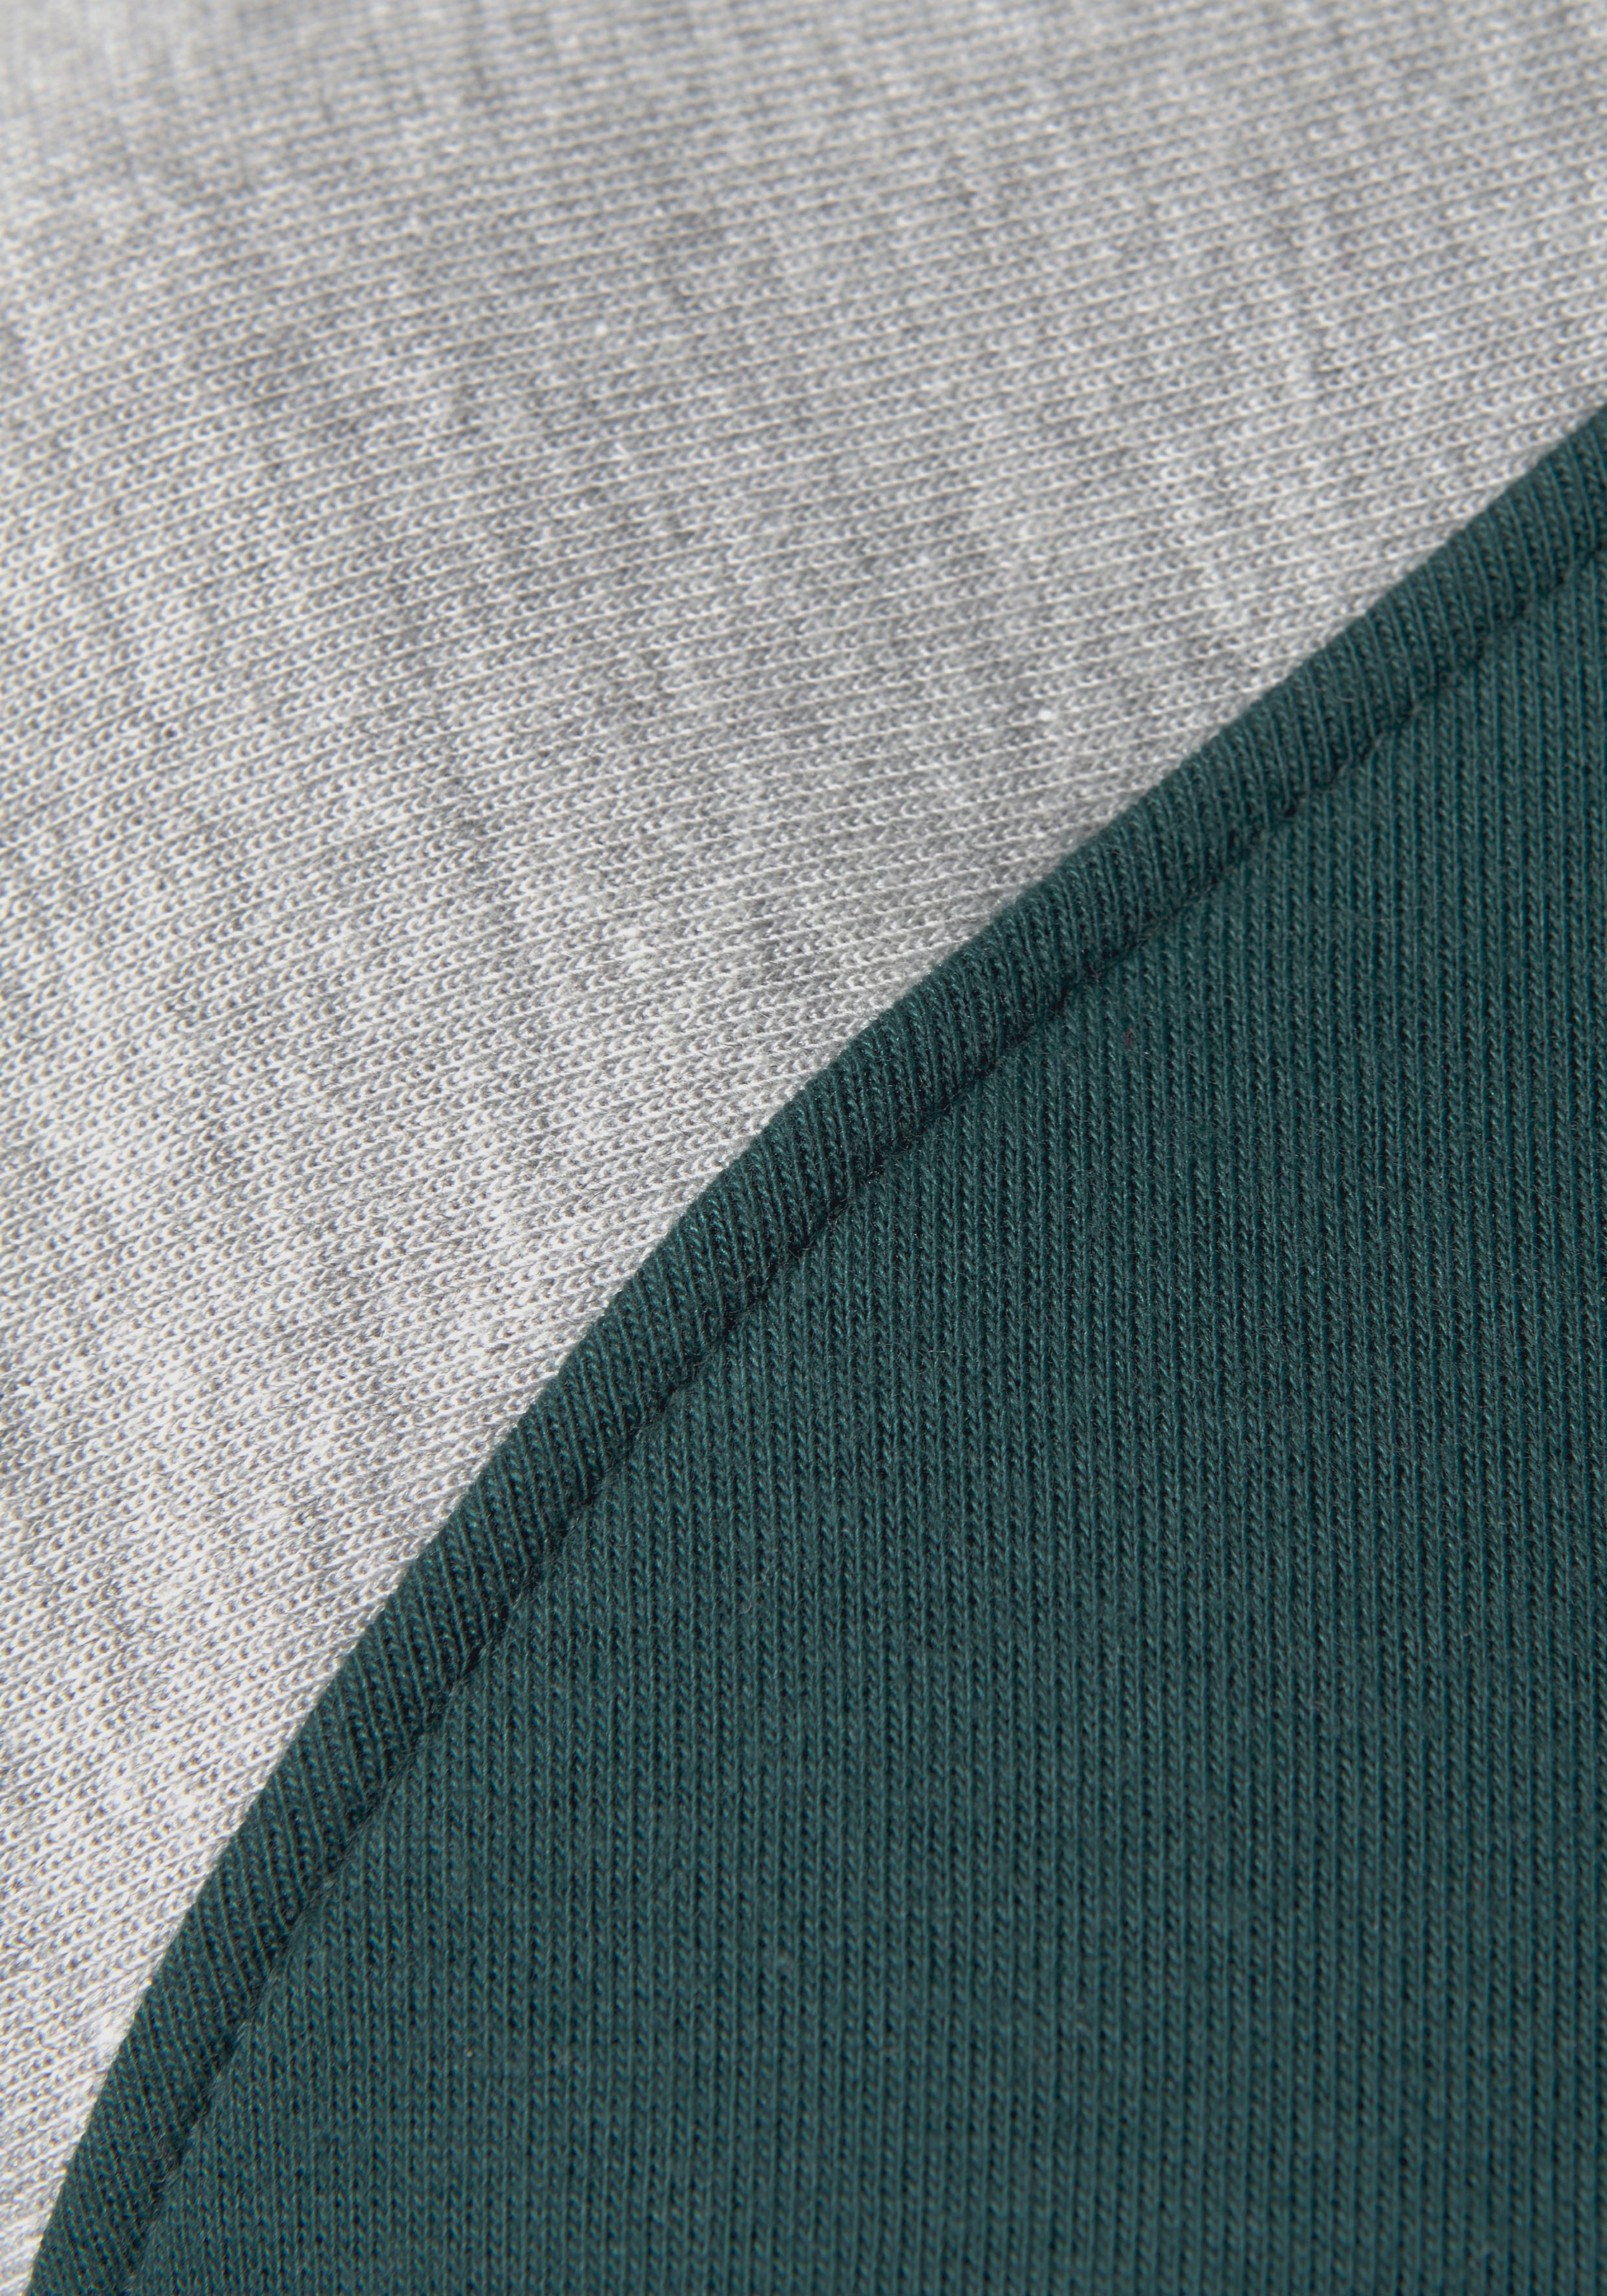 OTTO Kapuzensweatshirt, Ärmeln kaufen im und Loungeanzug, farblich Hoodie Bench. mit Shop abgesetzten Online Loungewear Logodruck,